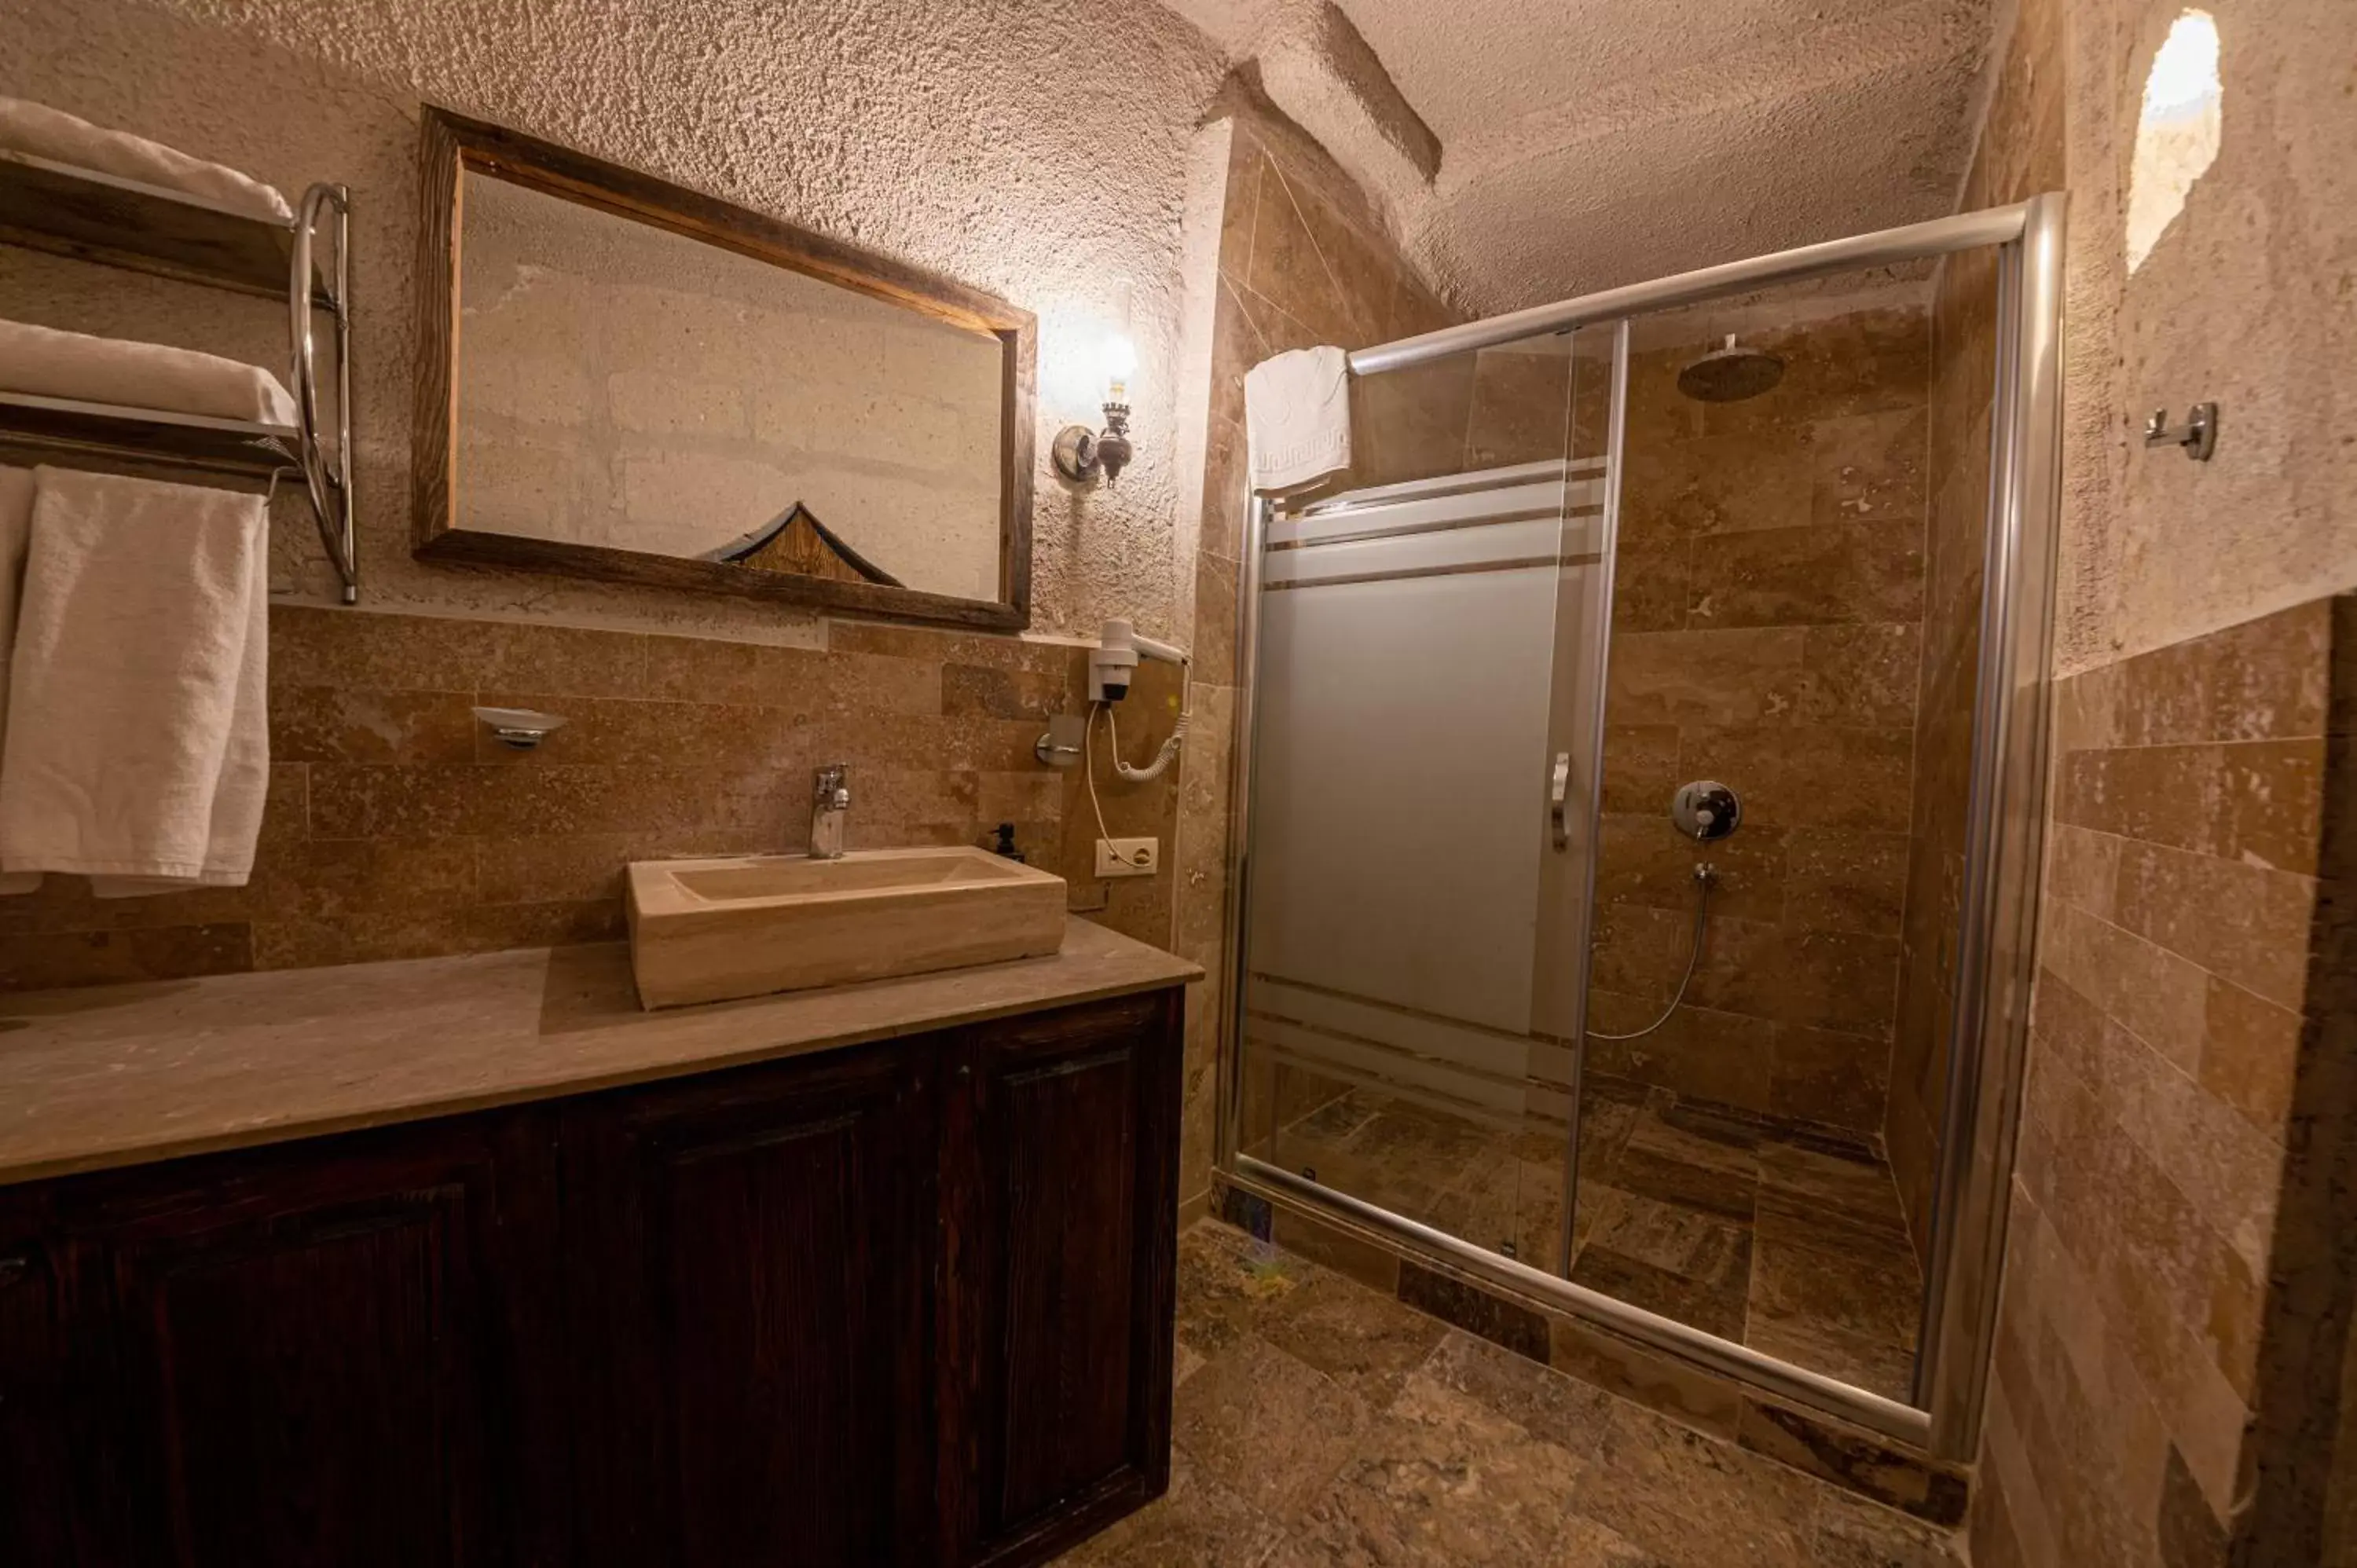 Shower, Bathroom in Hidden Cave Hotel